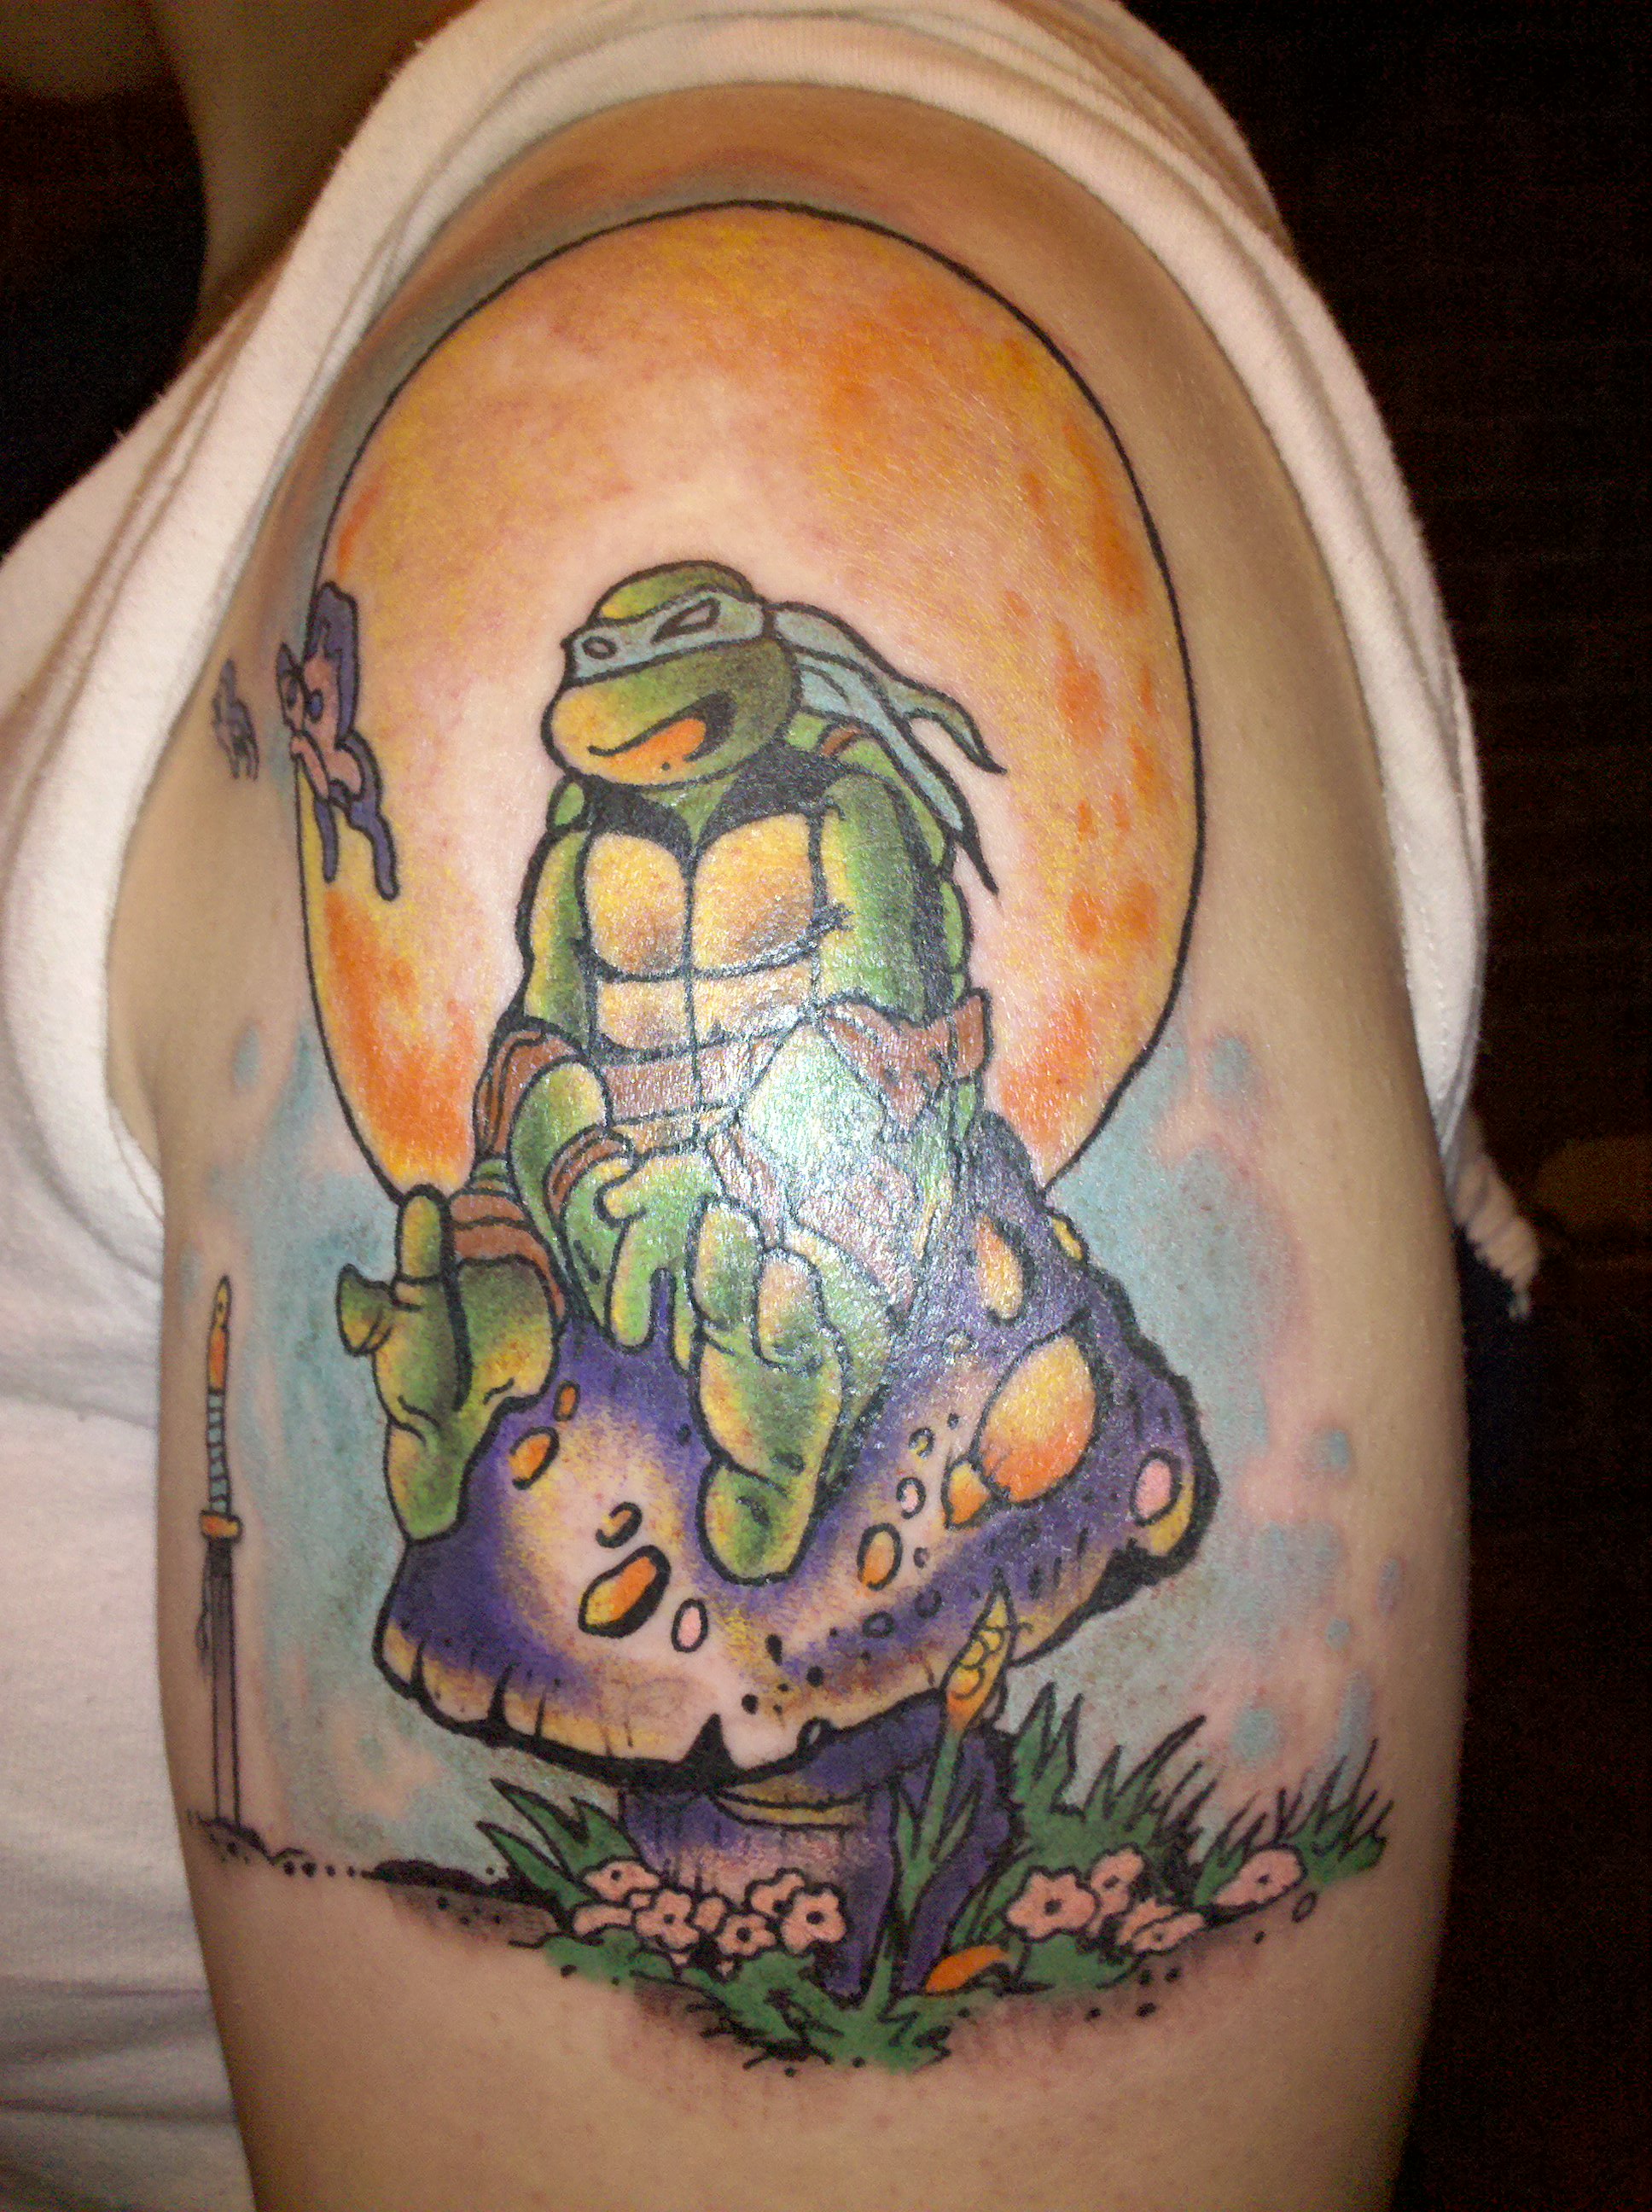 Leonardo - Ninja Turtles Tattoo